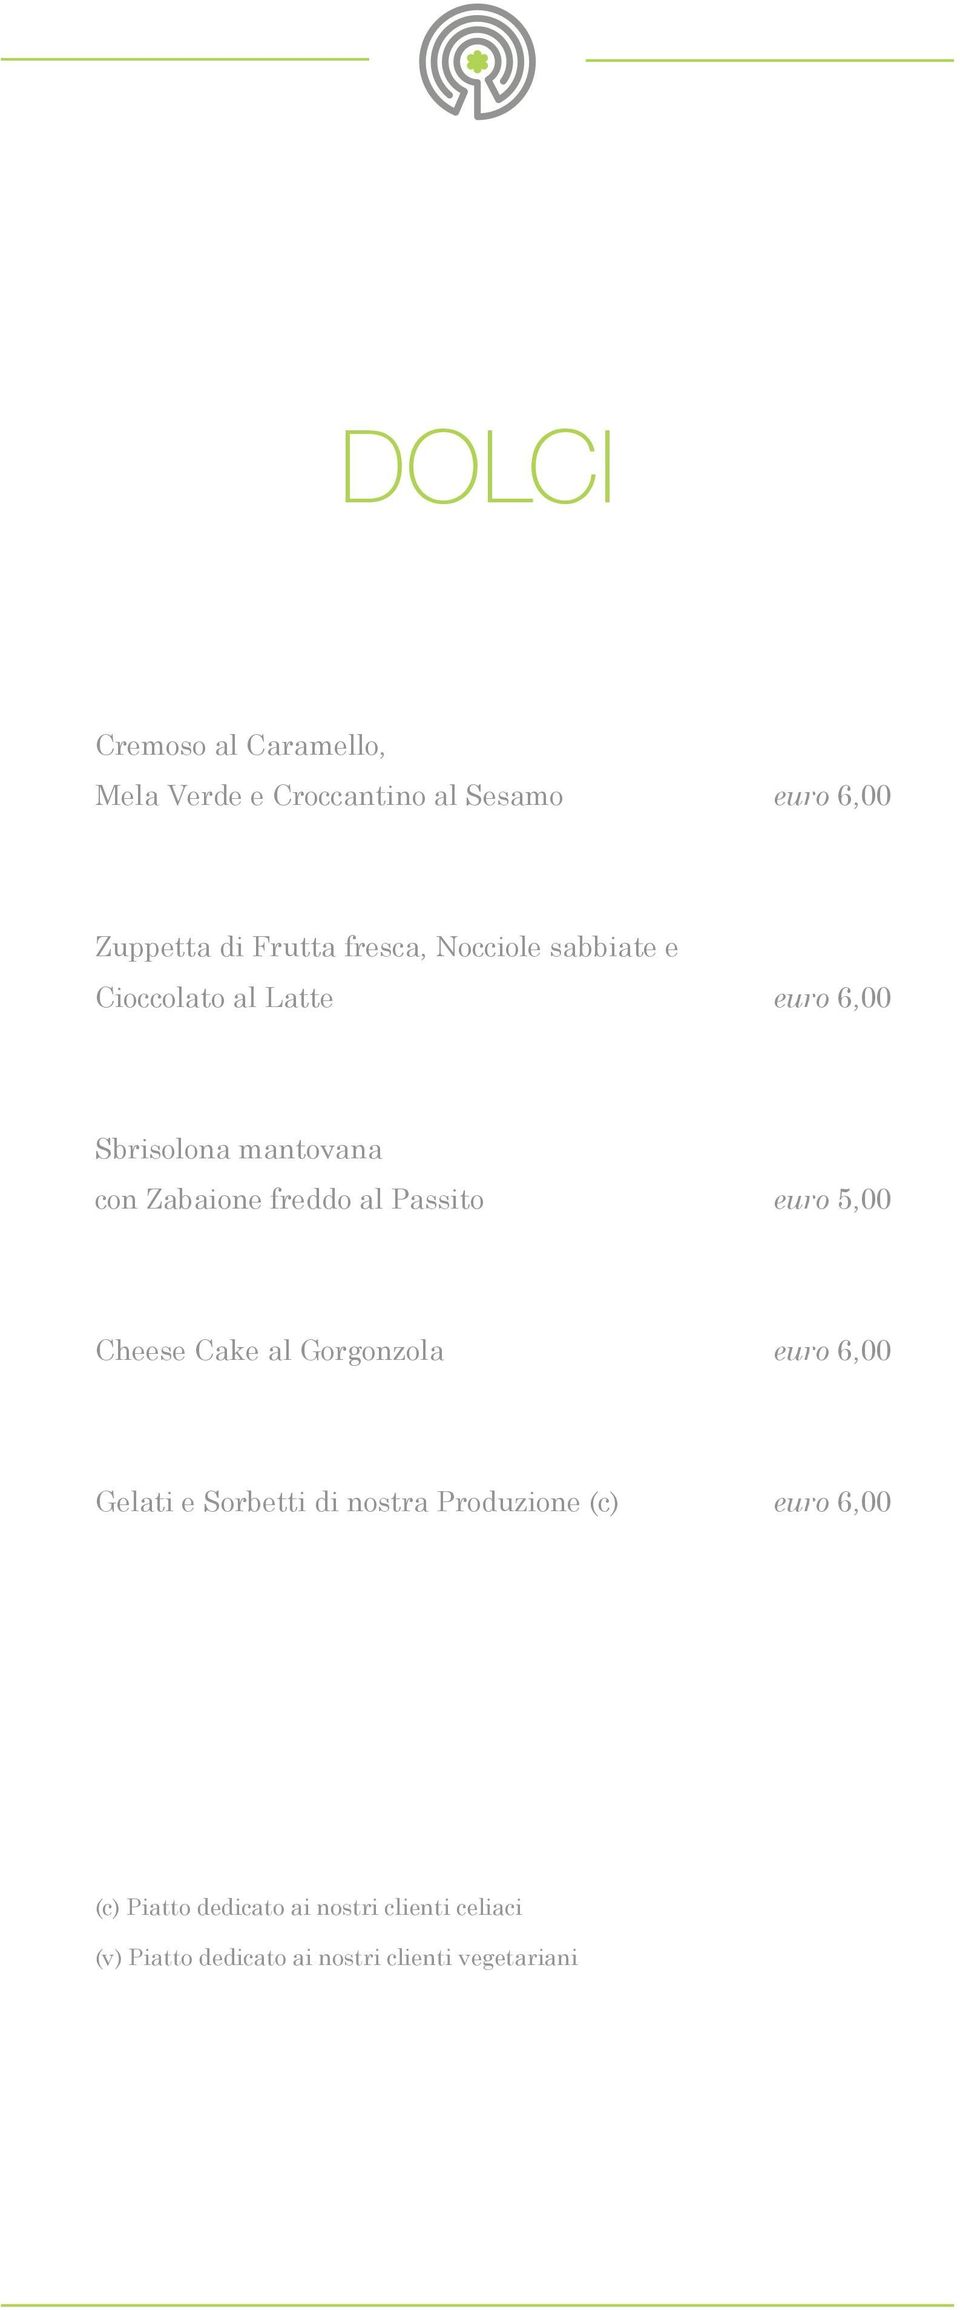 al Passito euro 5,00 Cheese Cake al Gorgonzola euro 6,00 Gelati e Sorbetti di nostra Produzione